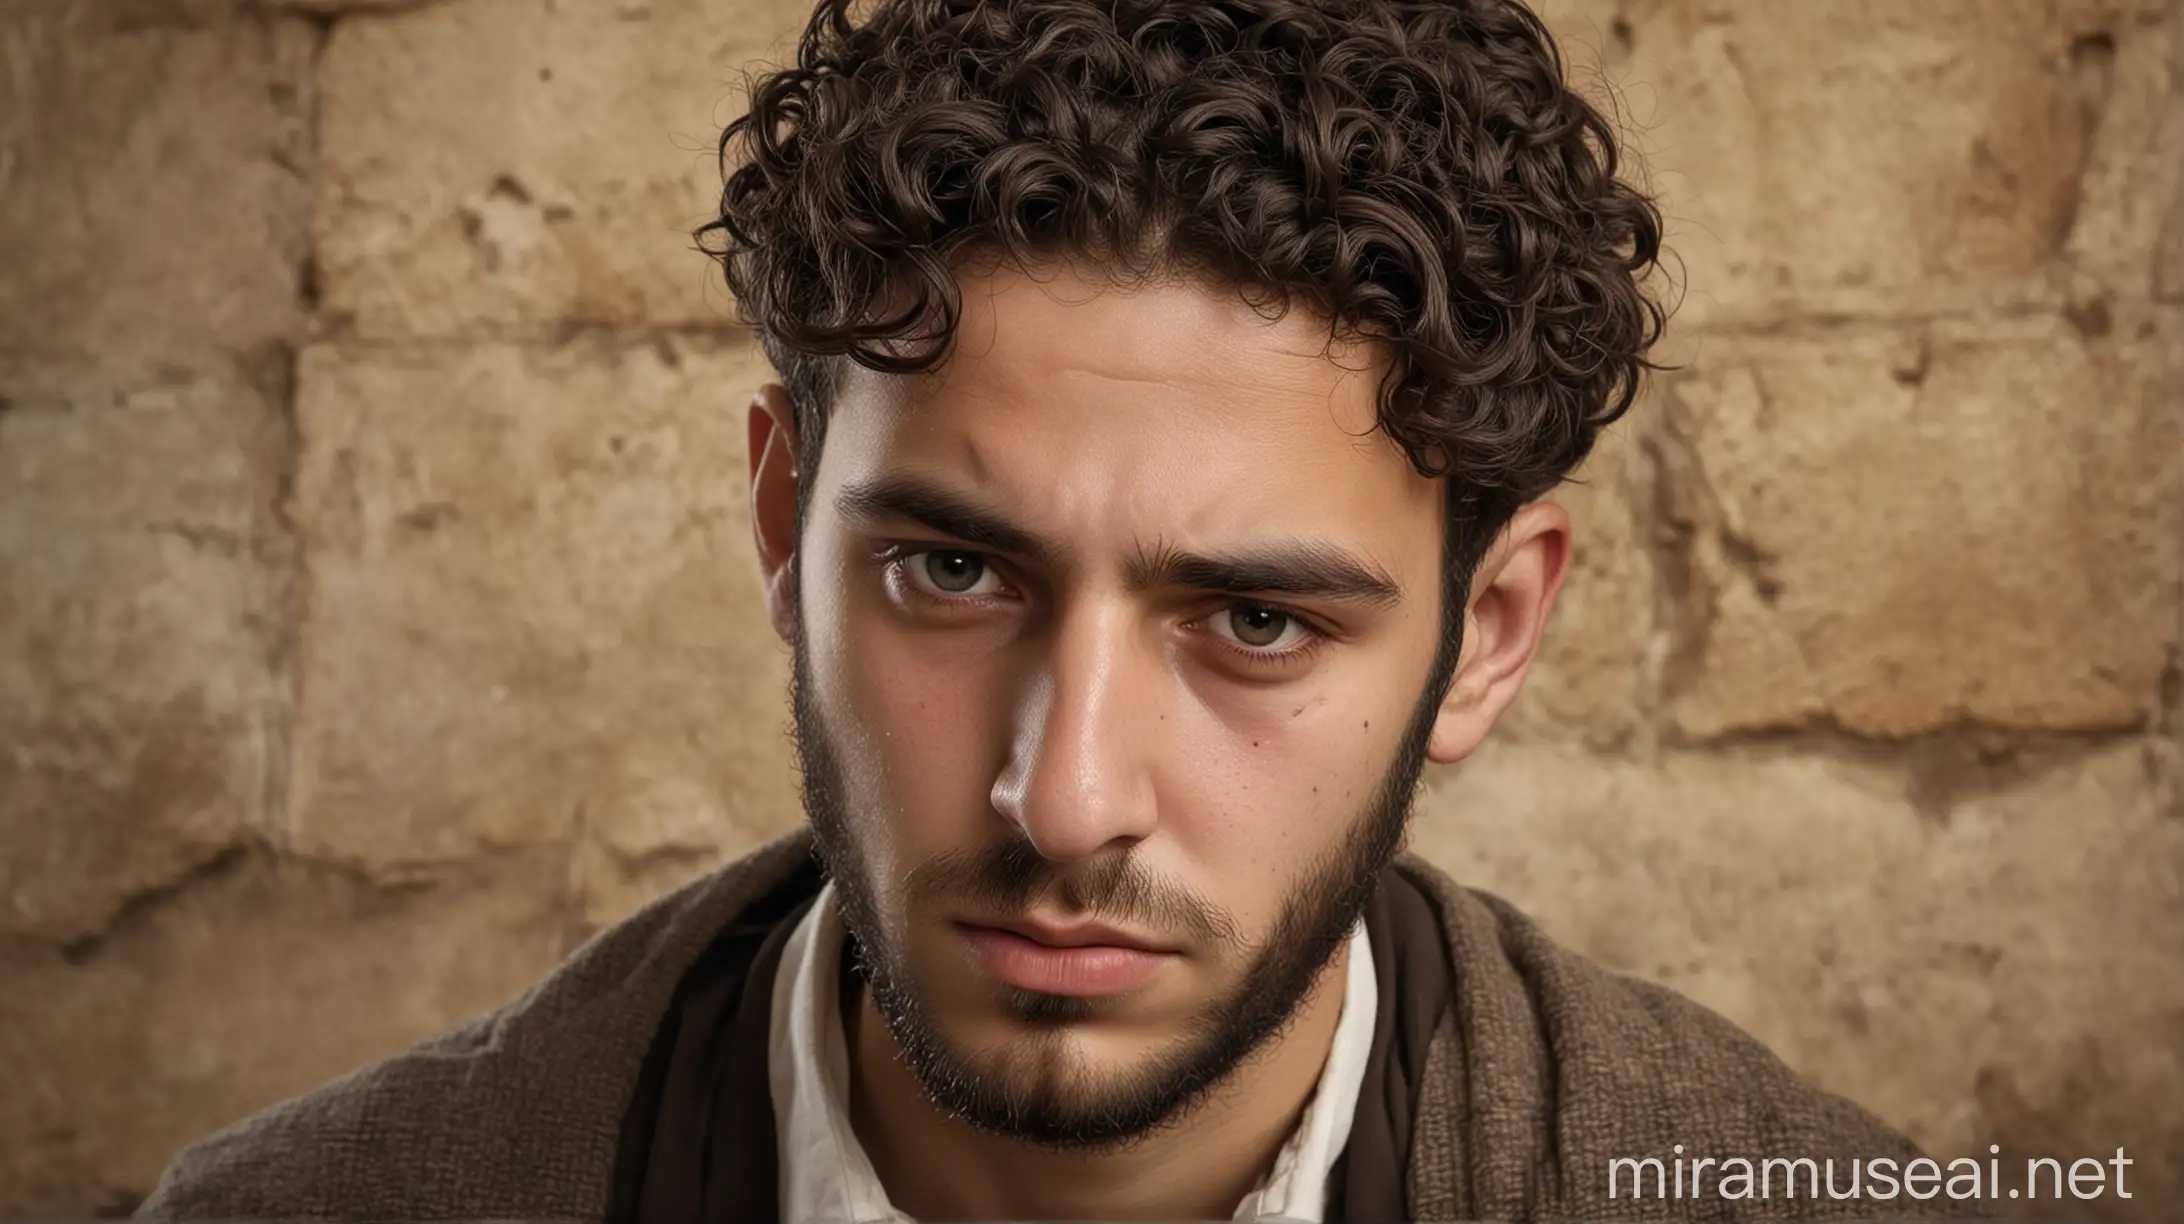 Sad Young Jewish Man in Ancient Jewish Attire